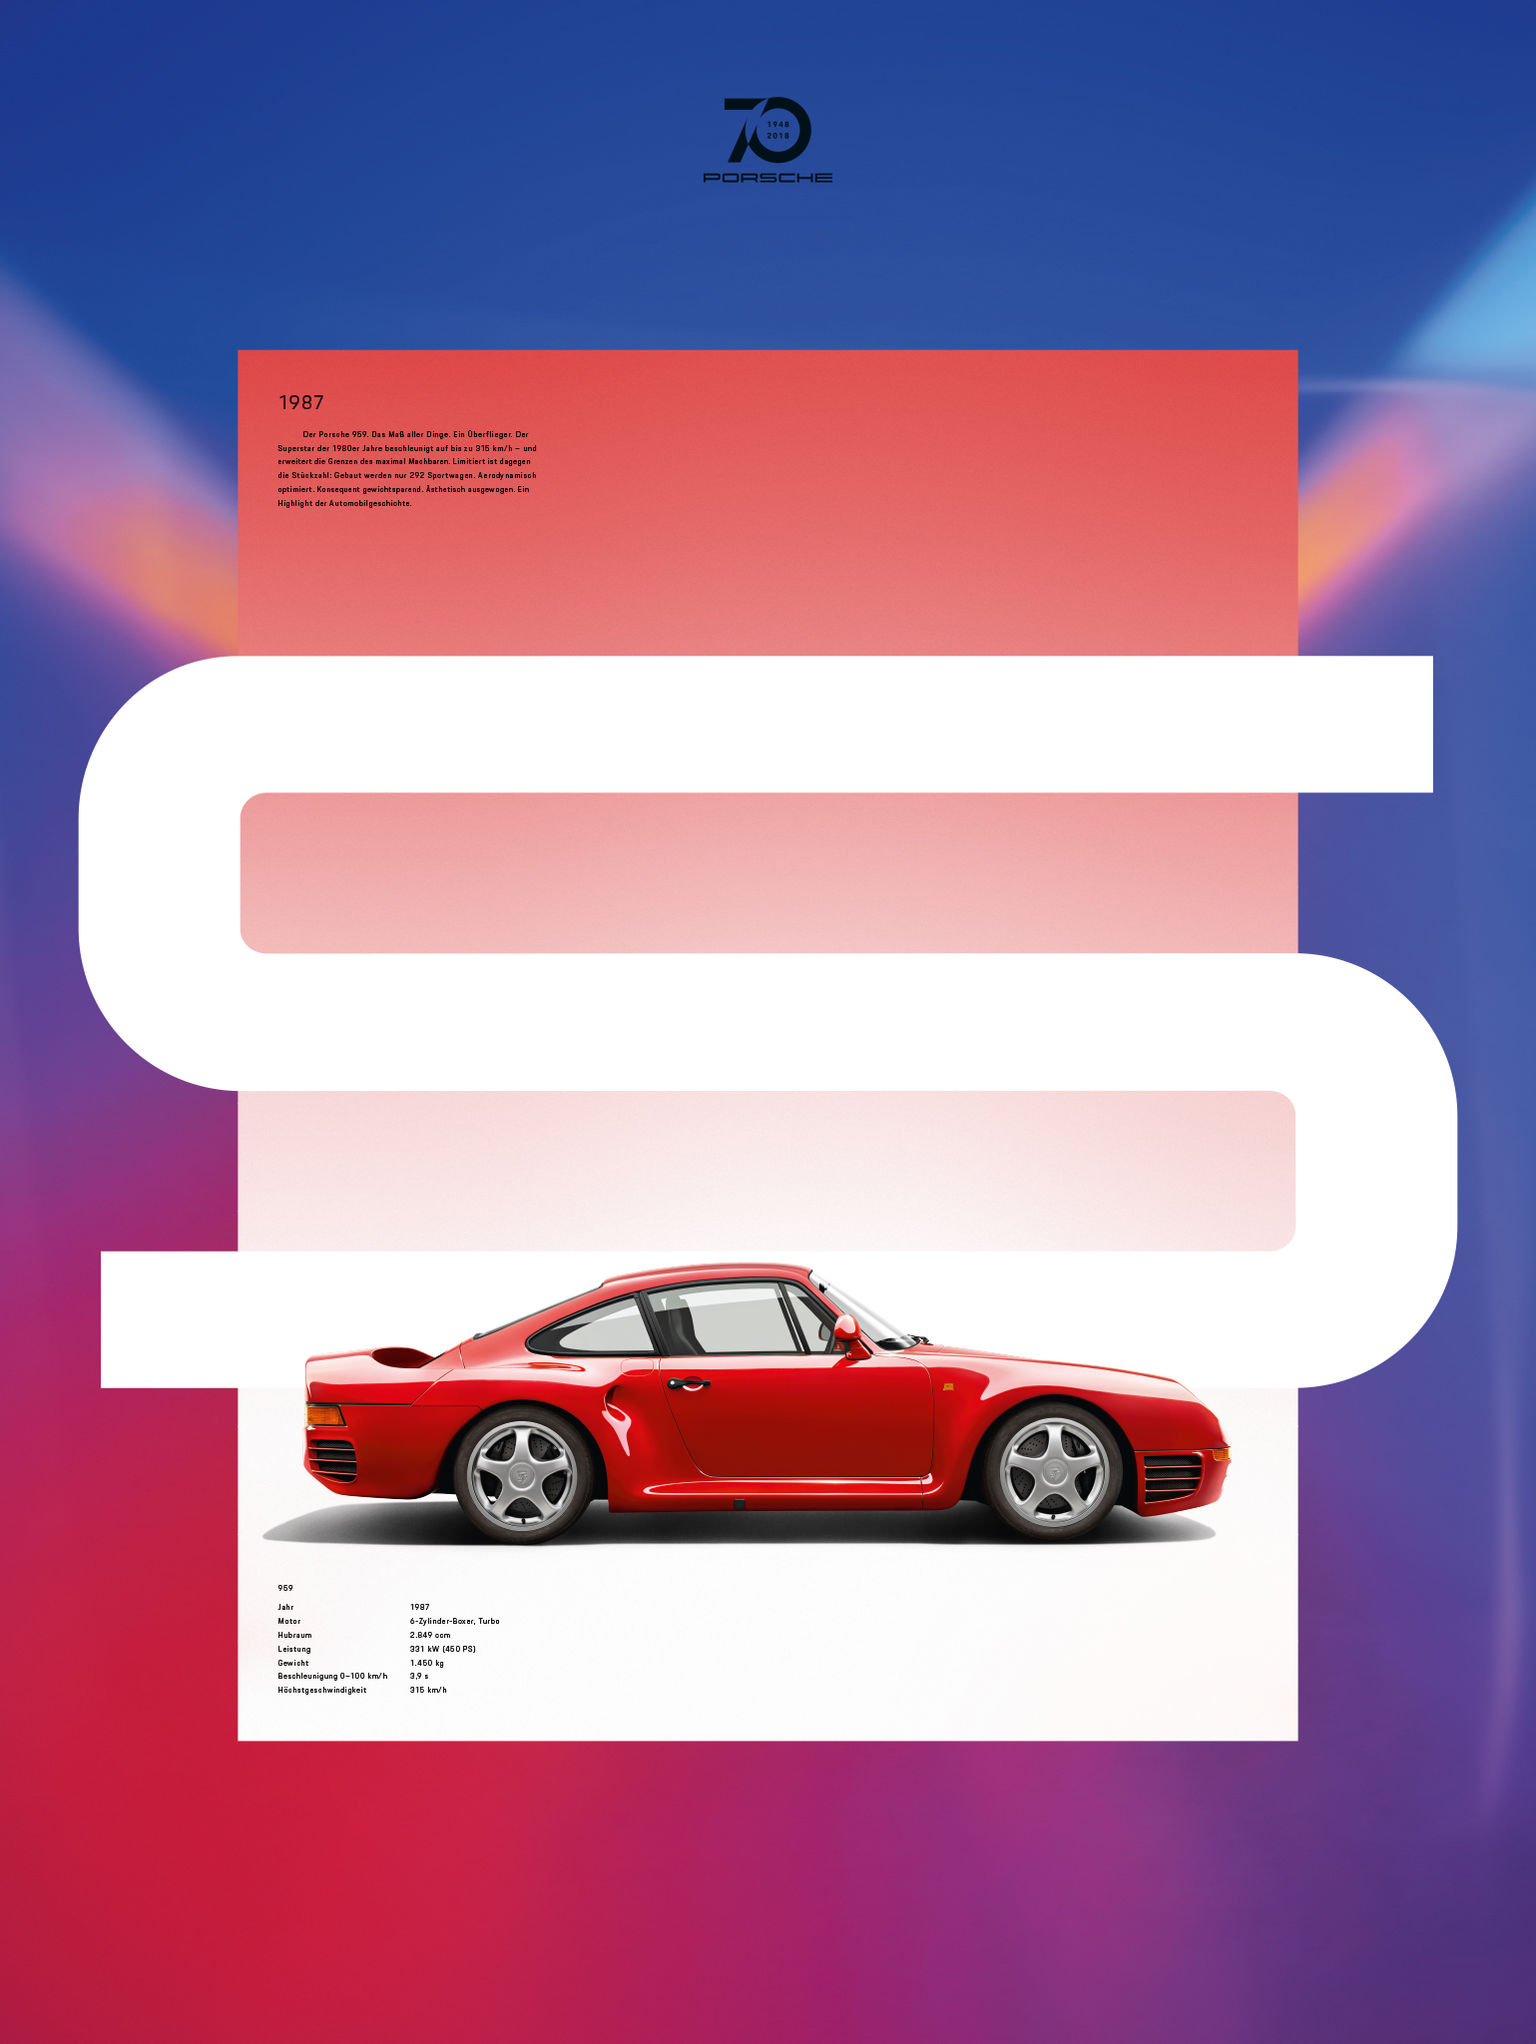 Porsche - 70 years Poster Series